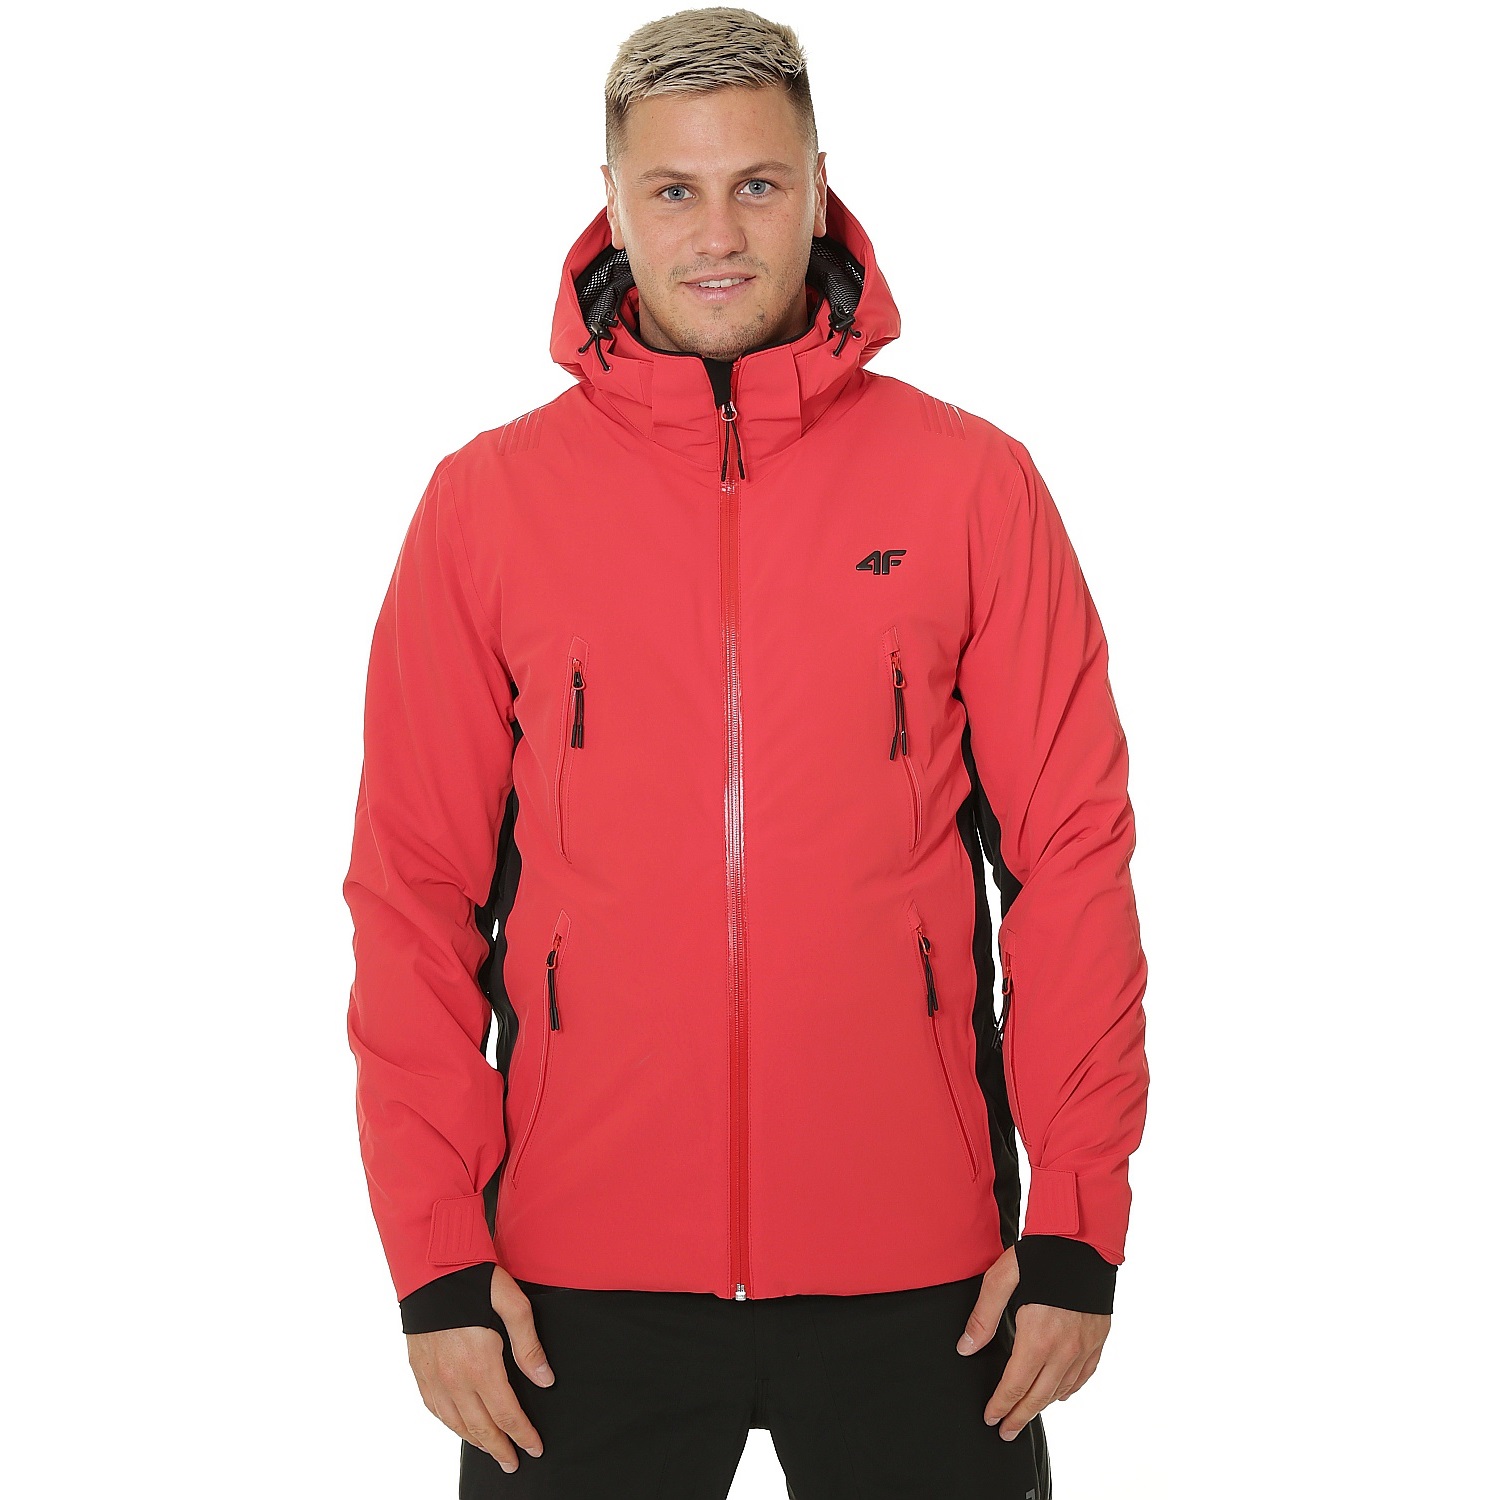 Geci Ski & Snow -  4f Men Ski Jacket KUMN012